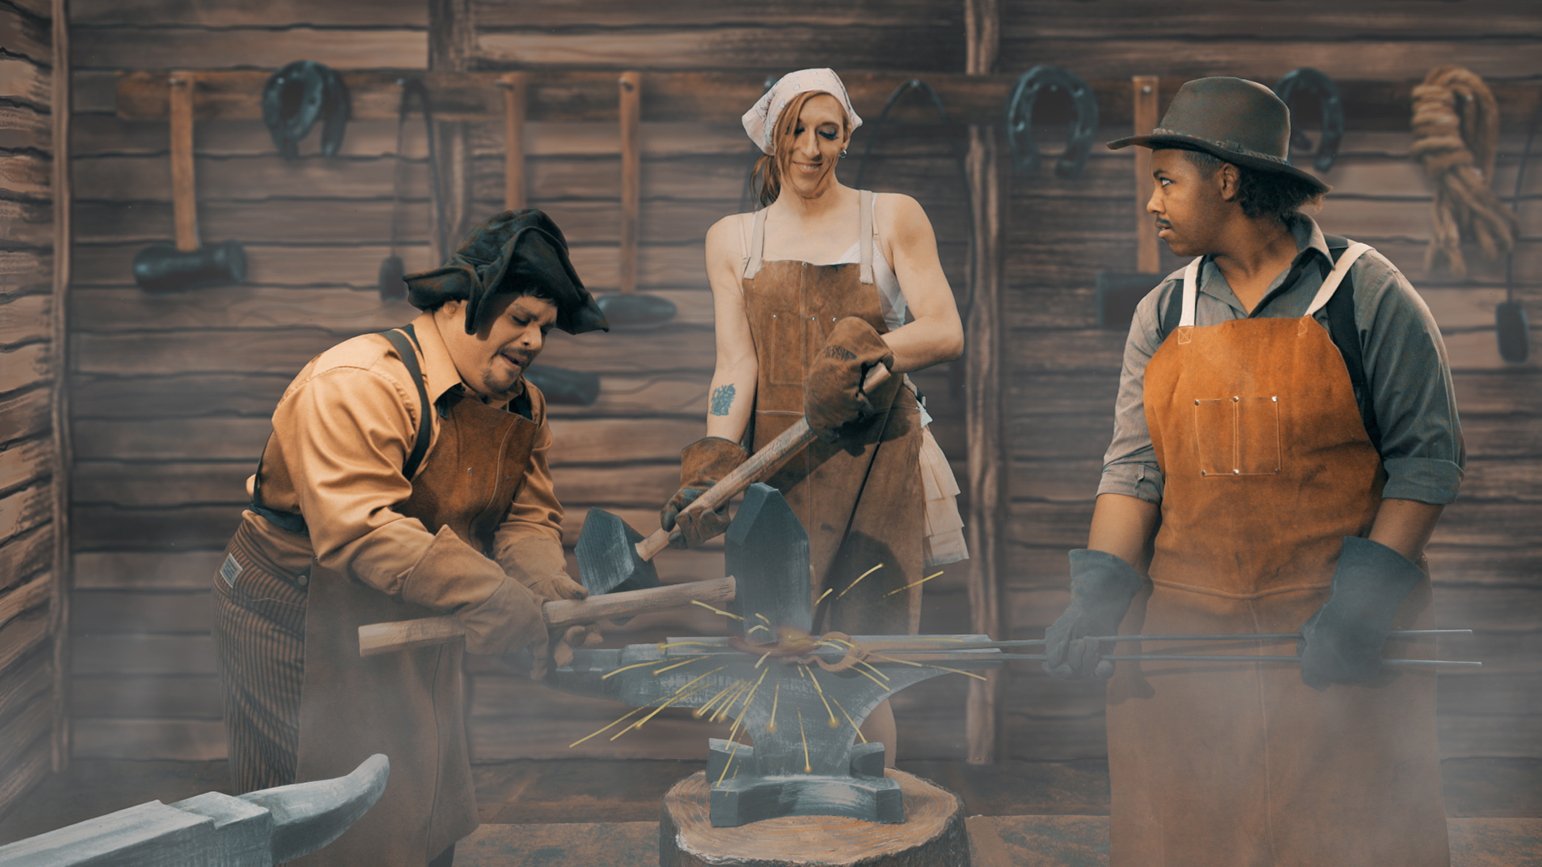 Video still showing three blacksmiths against a cartoonist background